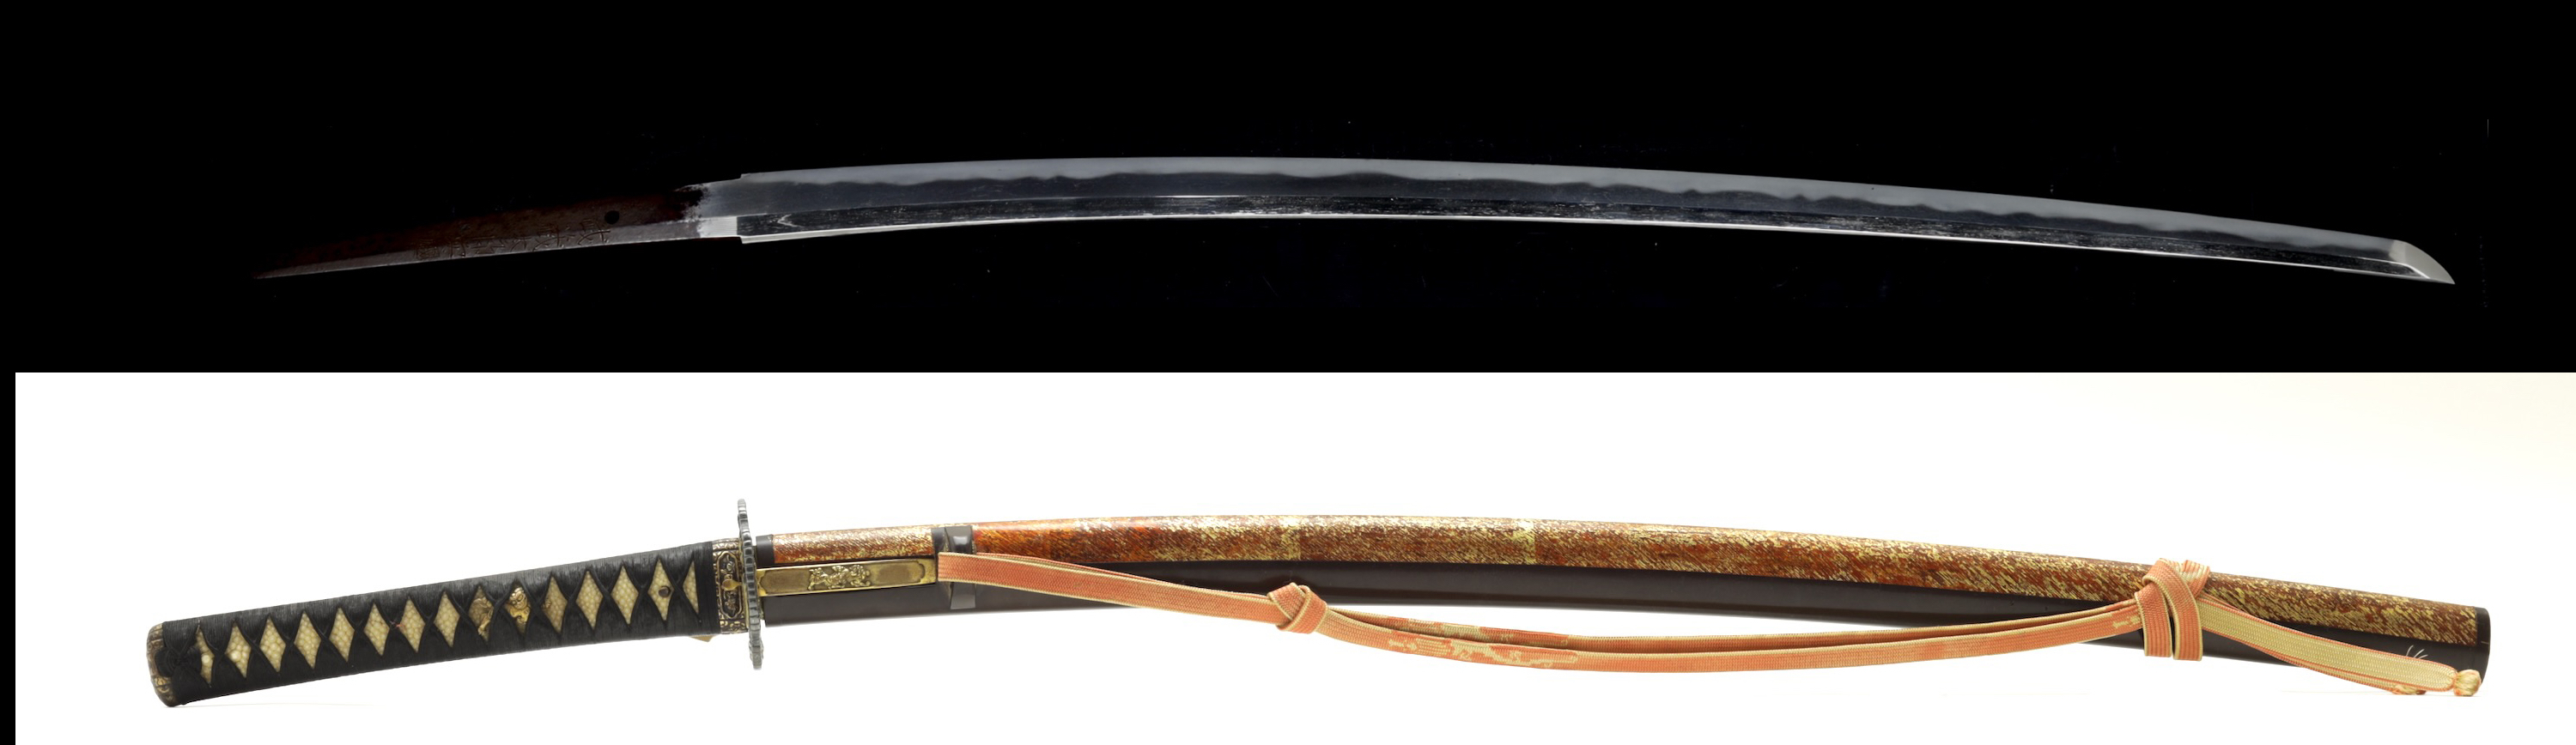 Musashi Taro Yasukuni sword koshirae